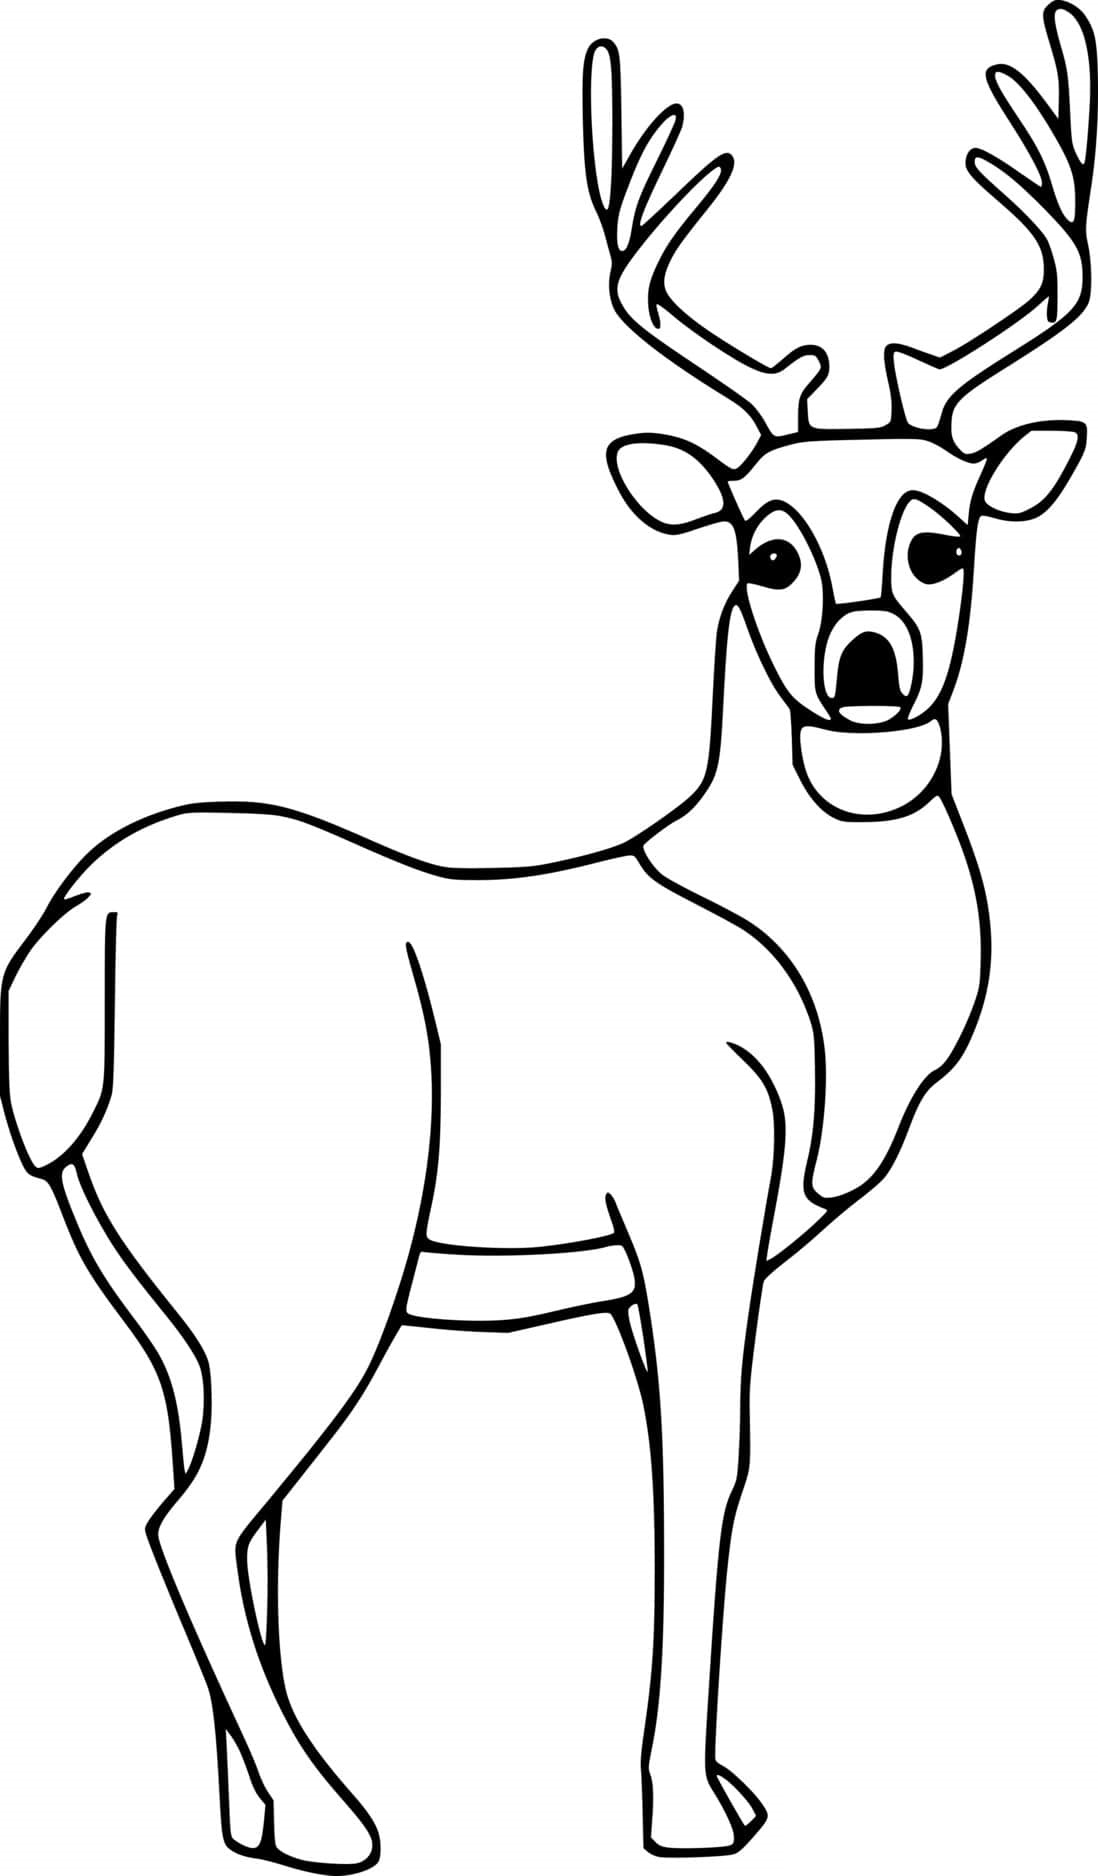 Simple Deer Coloring Page